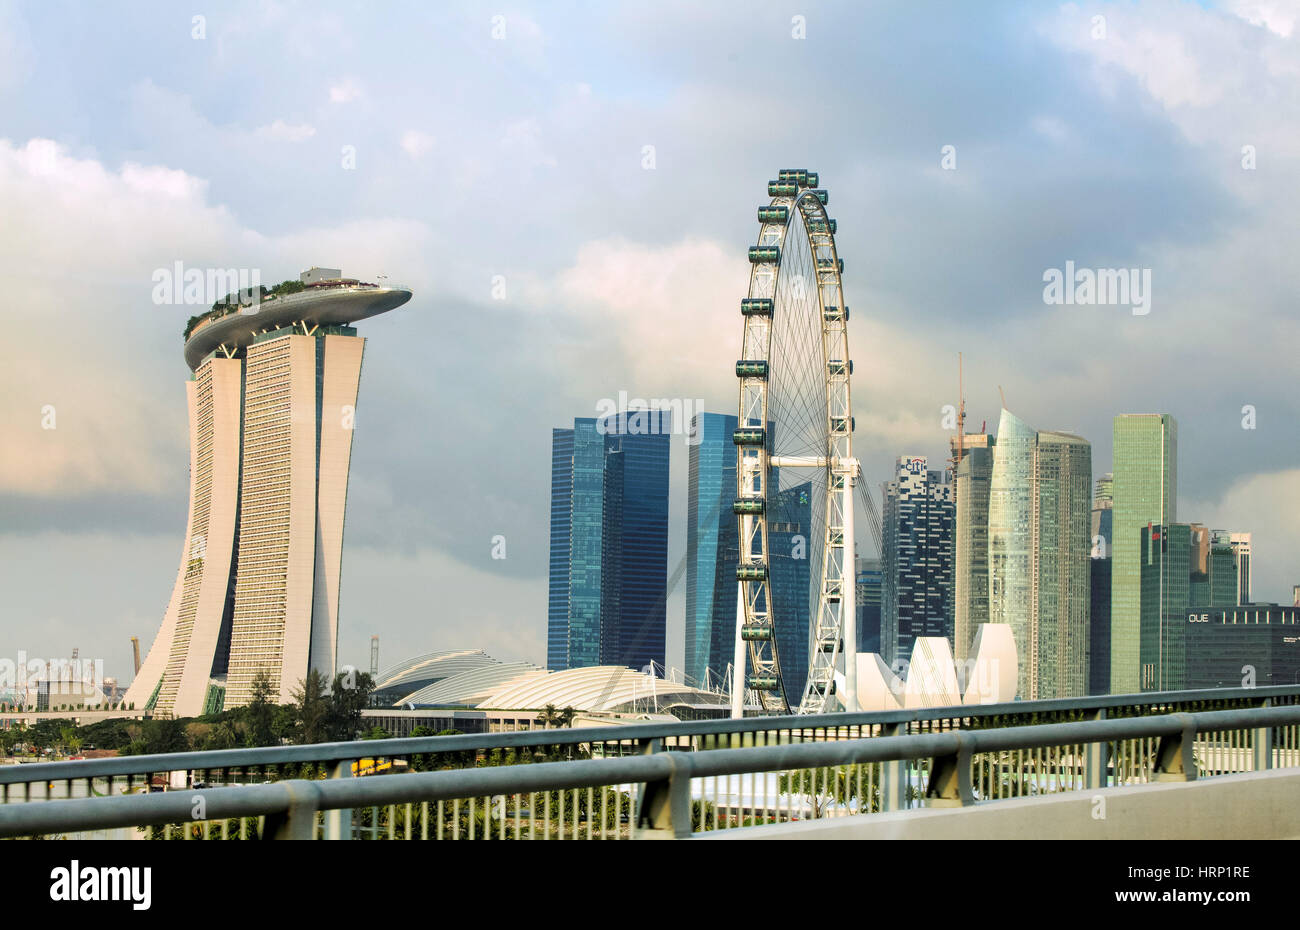 La grande roue Singapore Flyer, futuristes Marina Bay Sands Hotel, architecte Moshe Safdie, Marina Bay, noyau central ,, Singapour, Asie, Singapour Banque D'Images